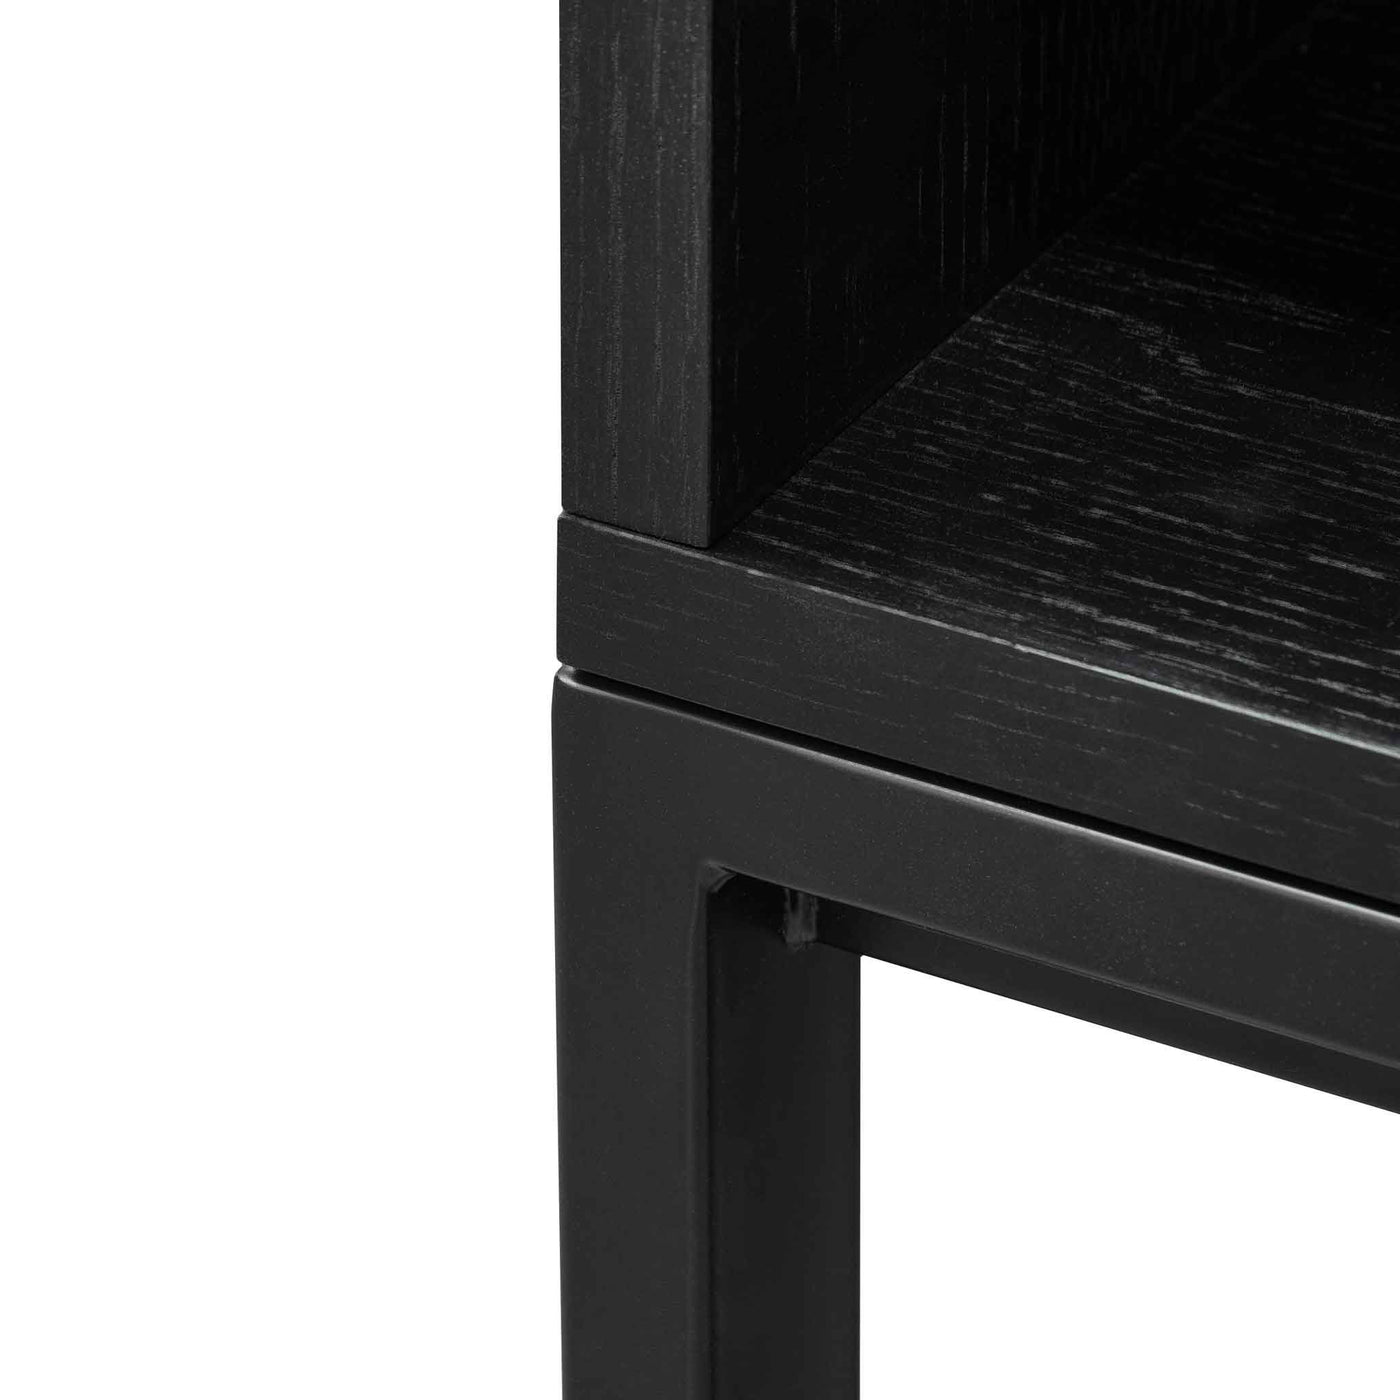 Deakin Wooden Bookcase - Black